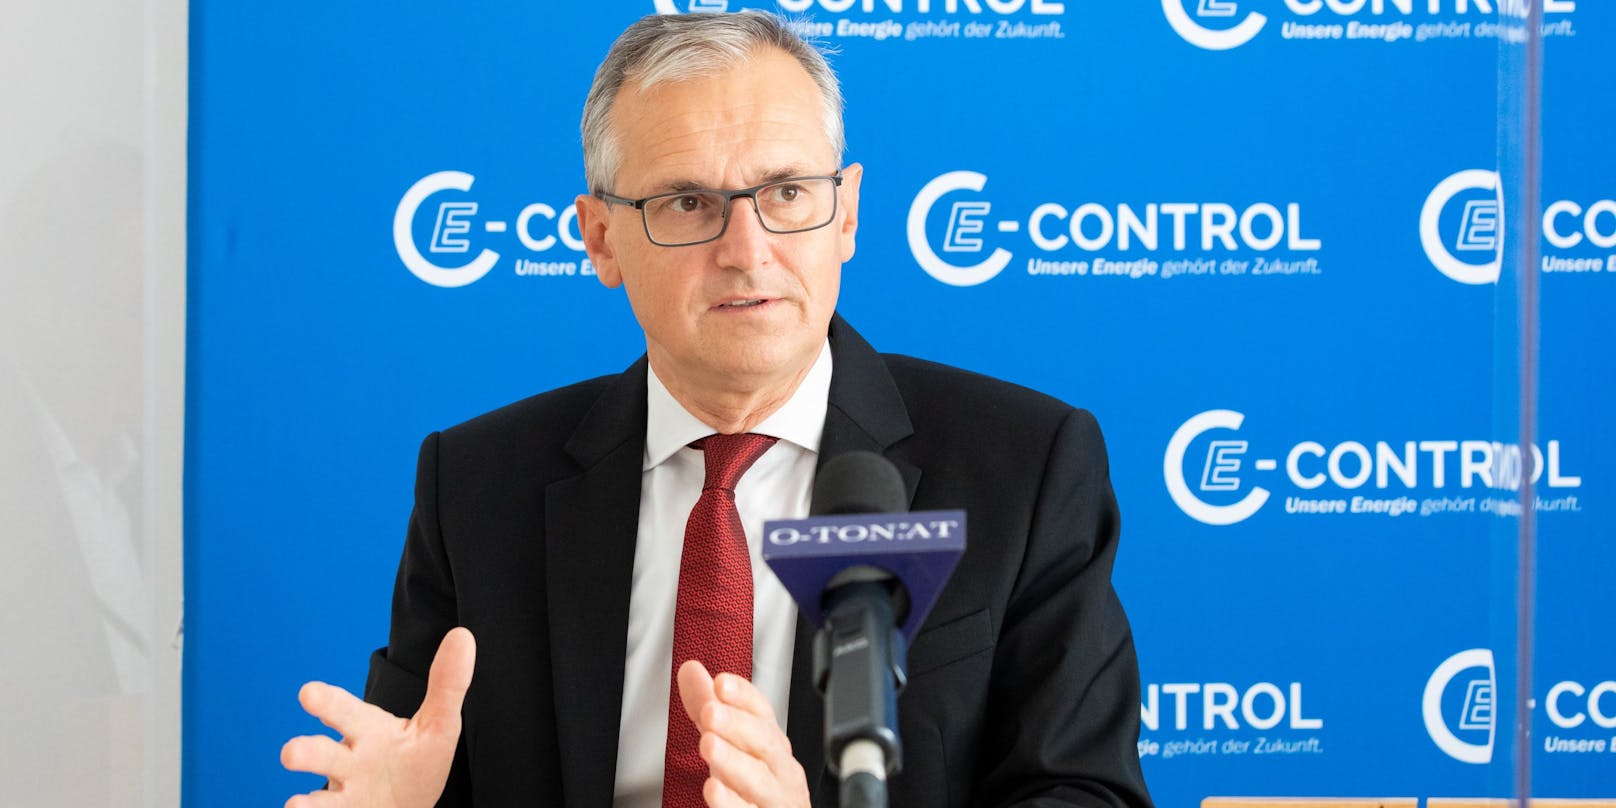 Wolfgang Urbantschitsch, Vorstand der E-Control